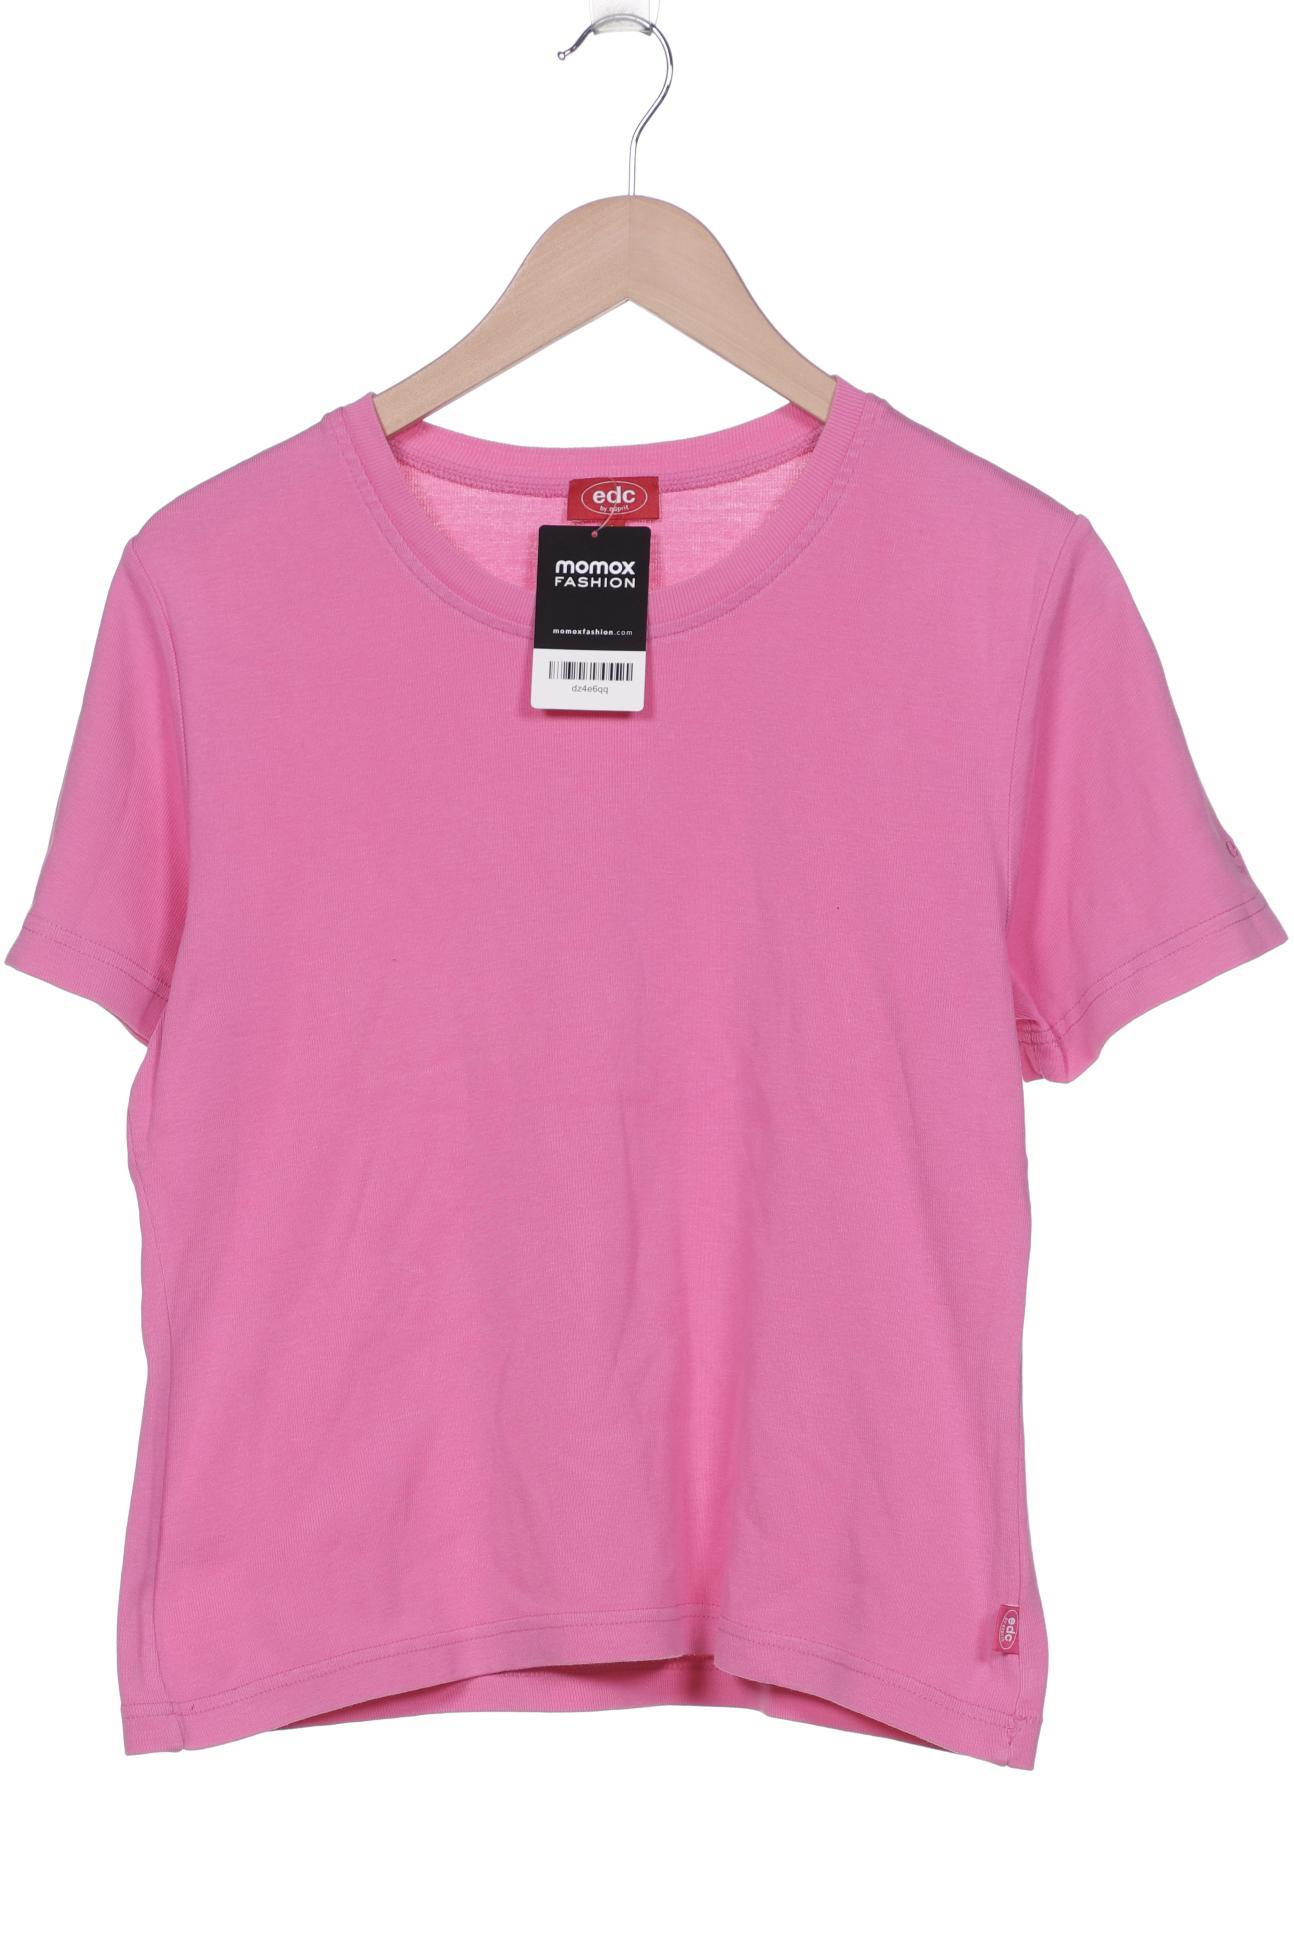 edc by Esprit Damen T-Shirt, pink, Gr. 42 von edc by esprit